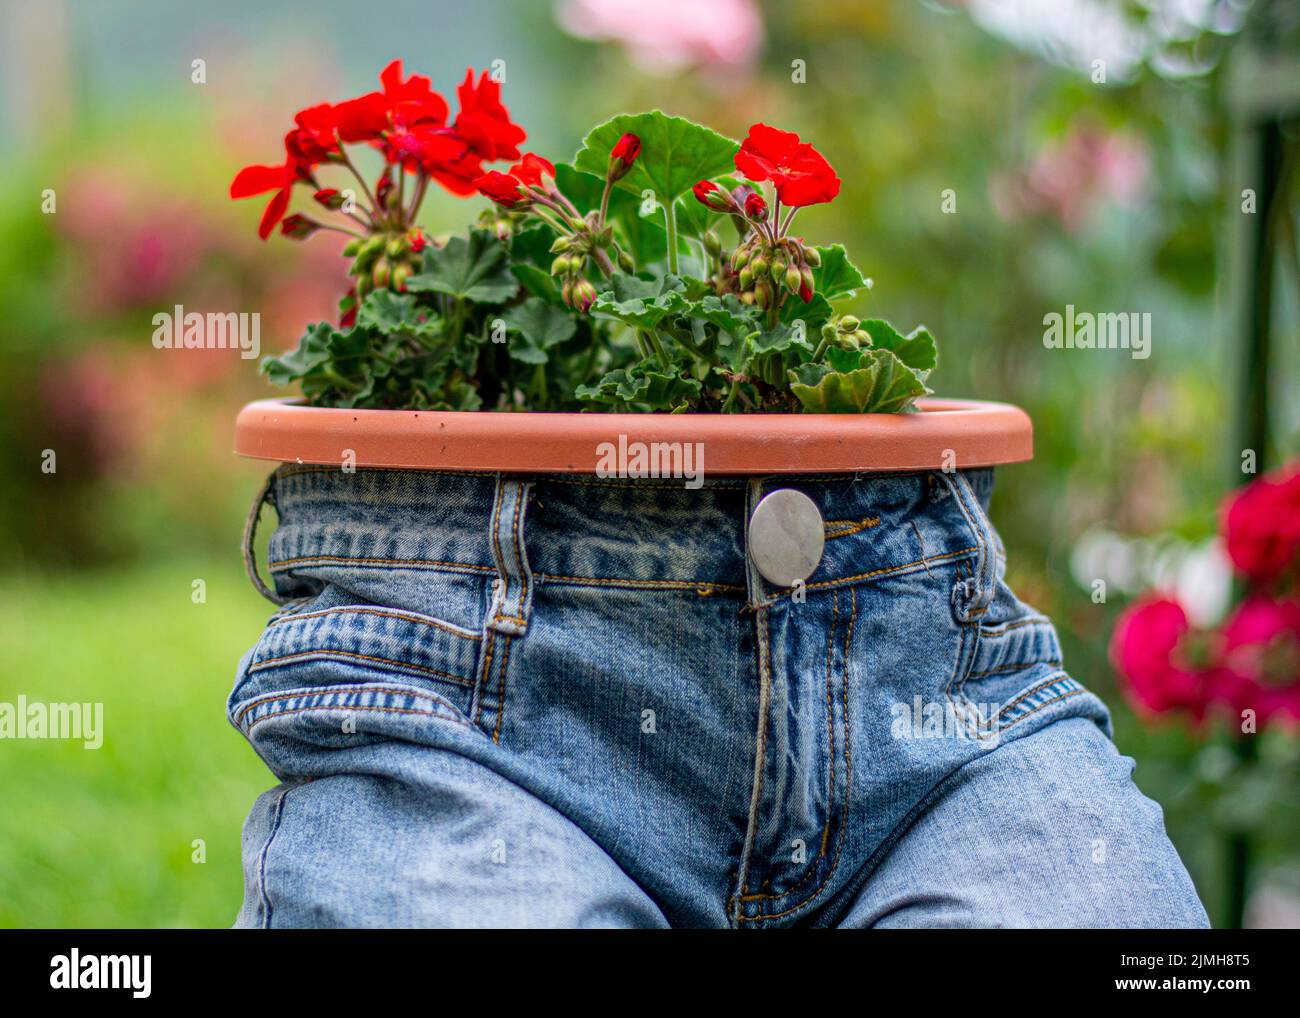 Jardinière de jeans bleus avec fleurs de écarlate rouge de Pelargonium peltatum. Décoration de jardin vintage. Banque D'Images